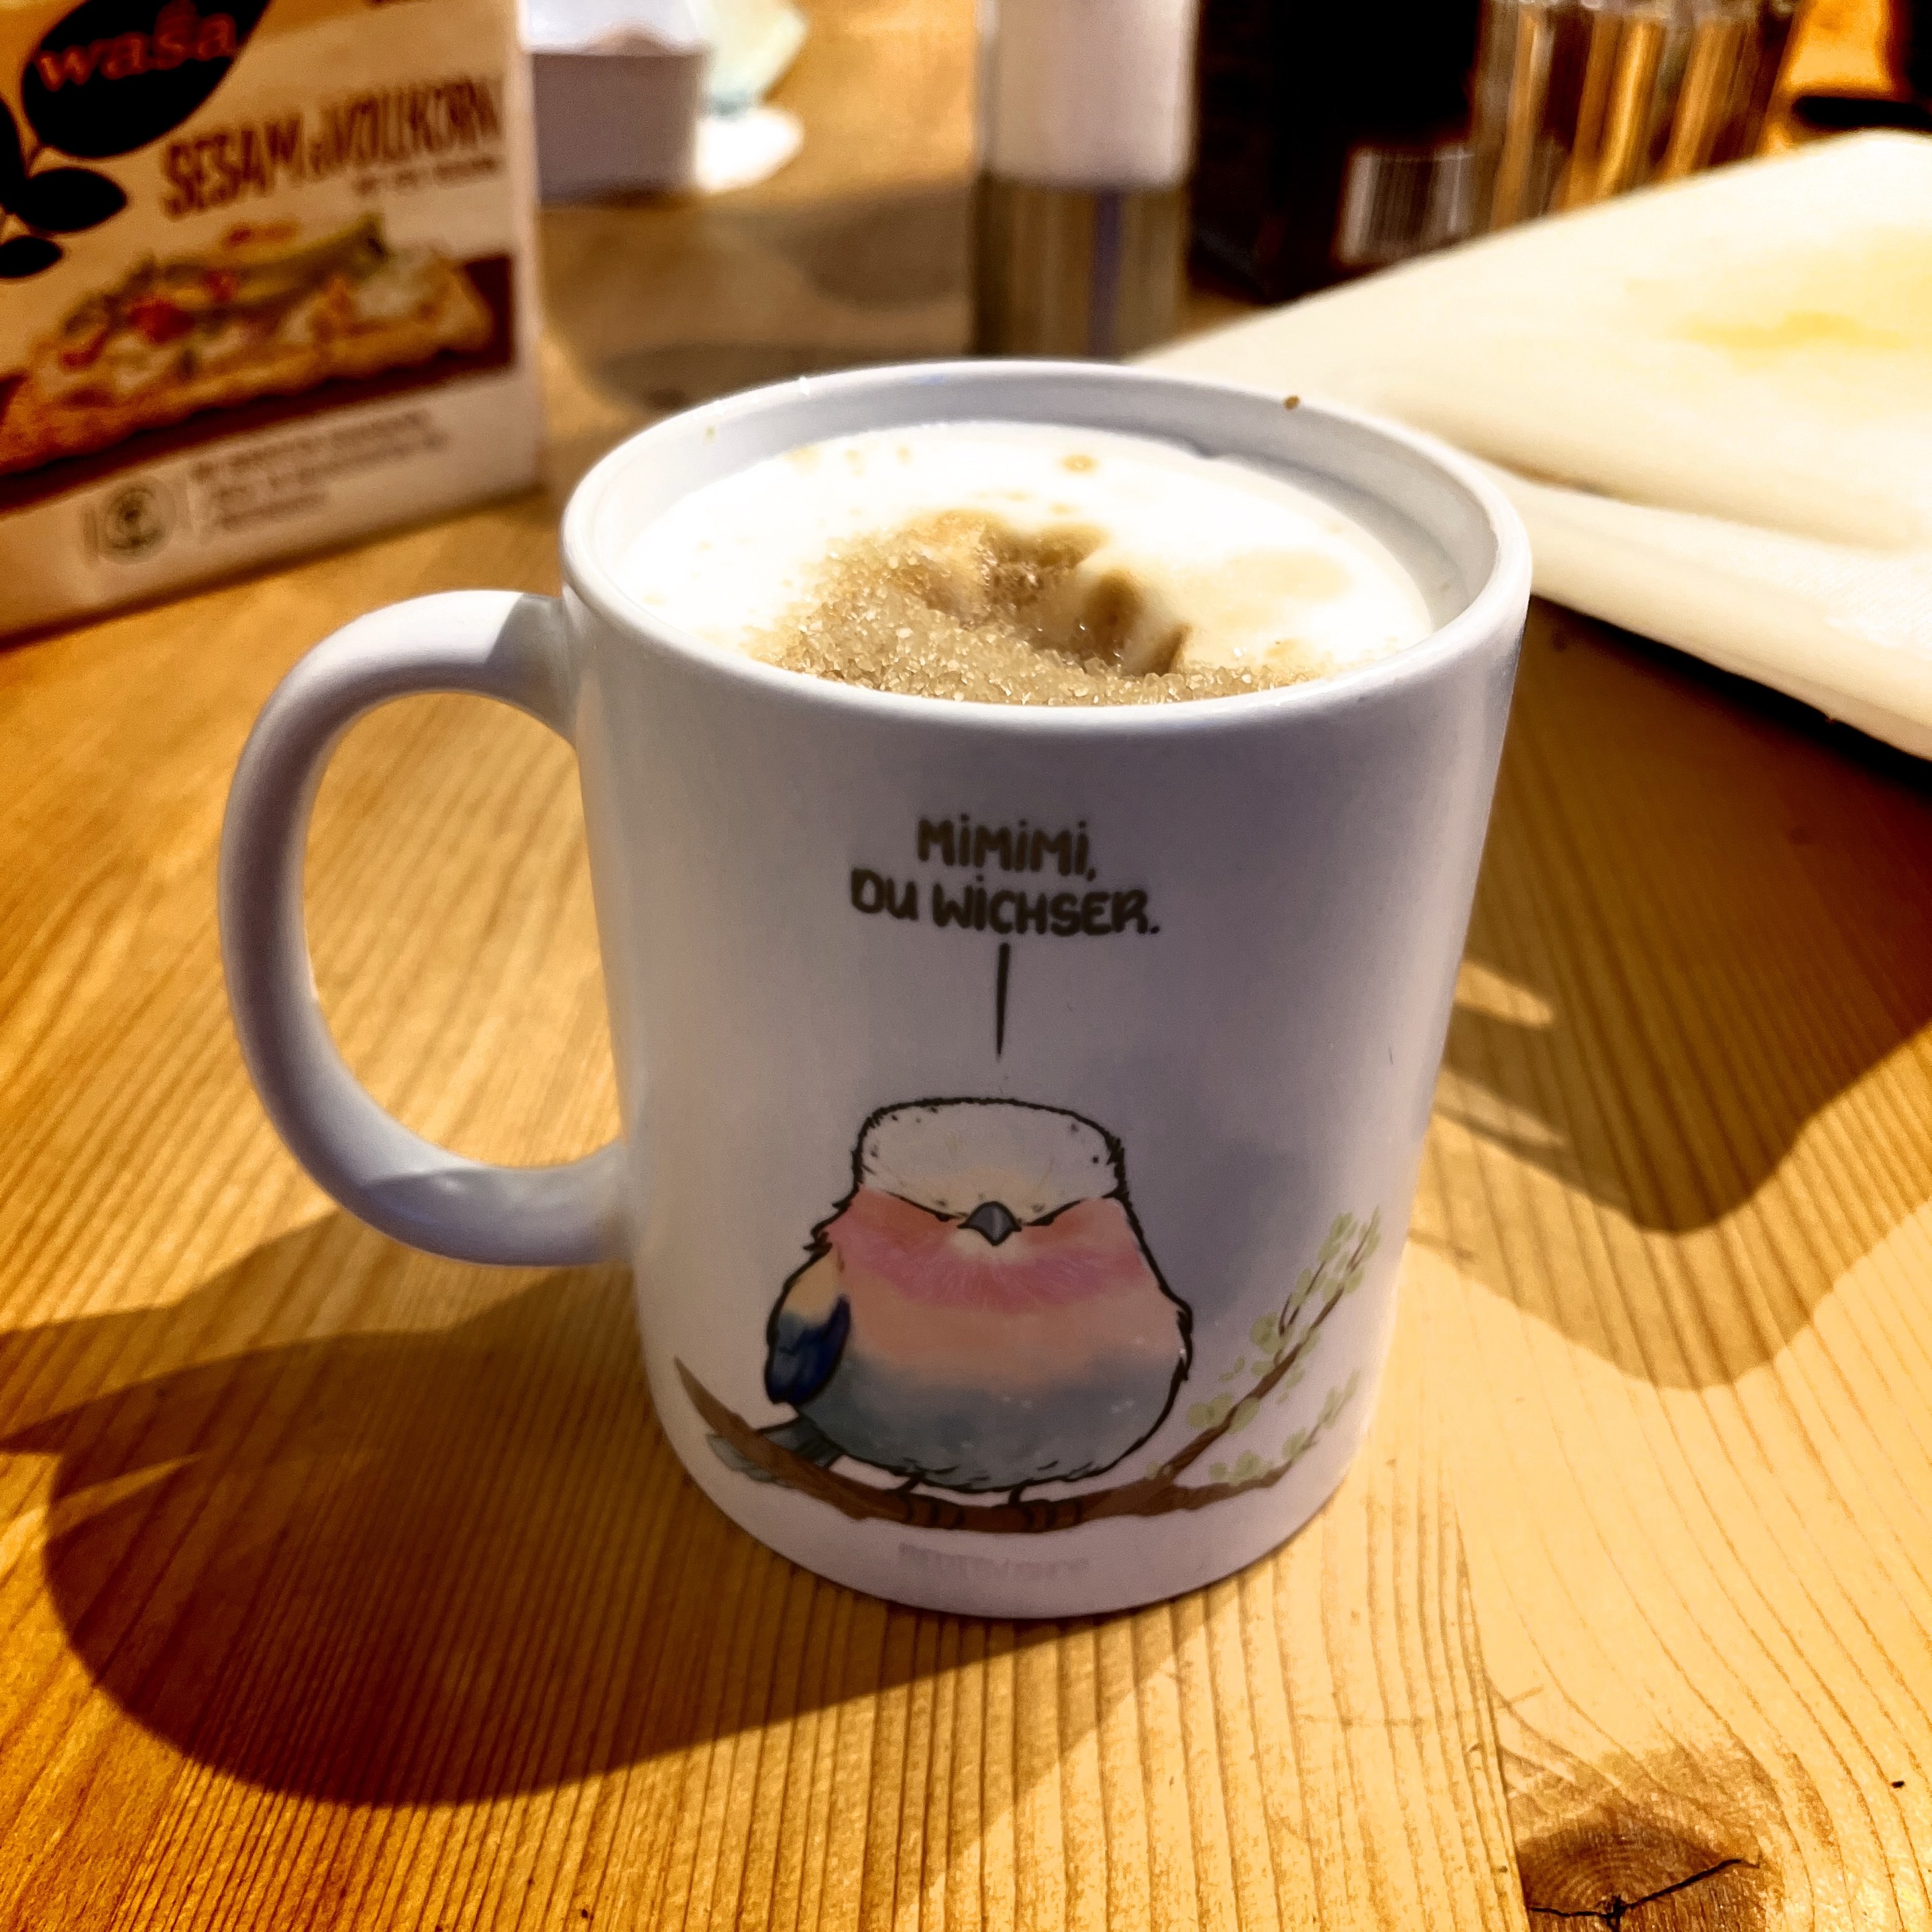 Eine Tasse Kaffee mit Schaum obenauf, mit einem Cartoon-Vogel und Text, auf einer hölzernen Oberfläche mit einer Schachtel Wasa-Knäckebrot im Hintergrund. Der Vogel sagt: Mimimi du Wichser